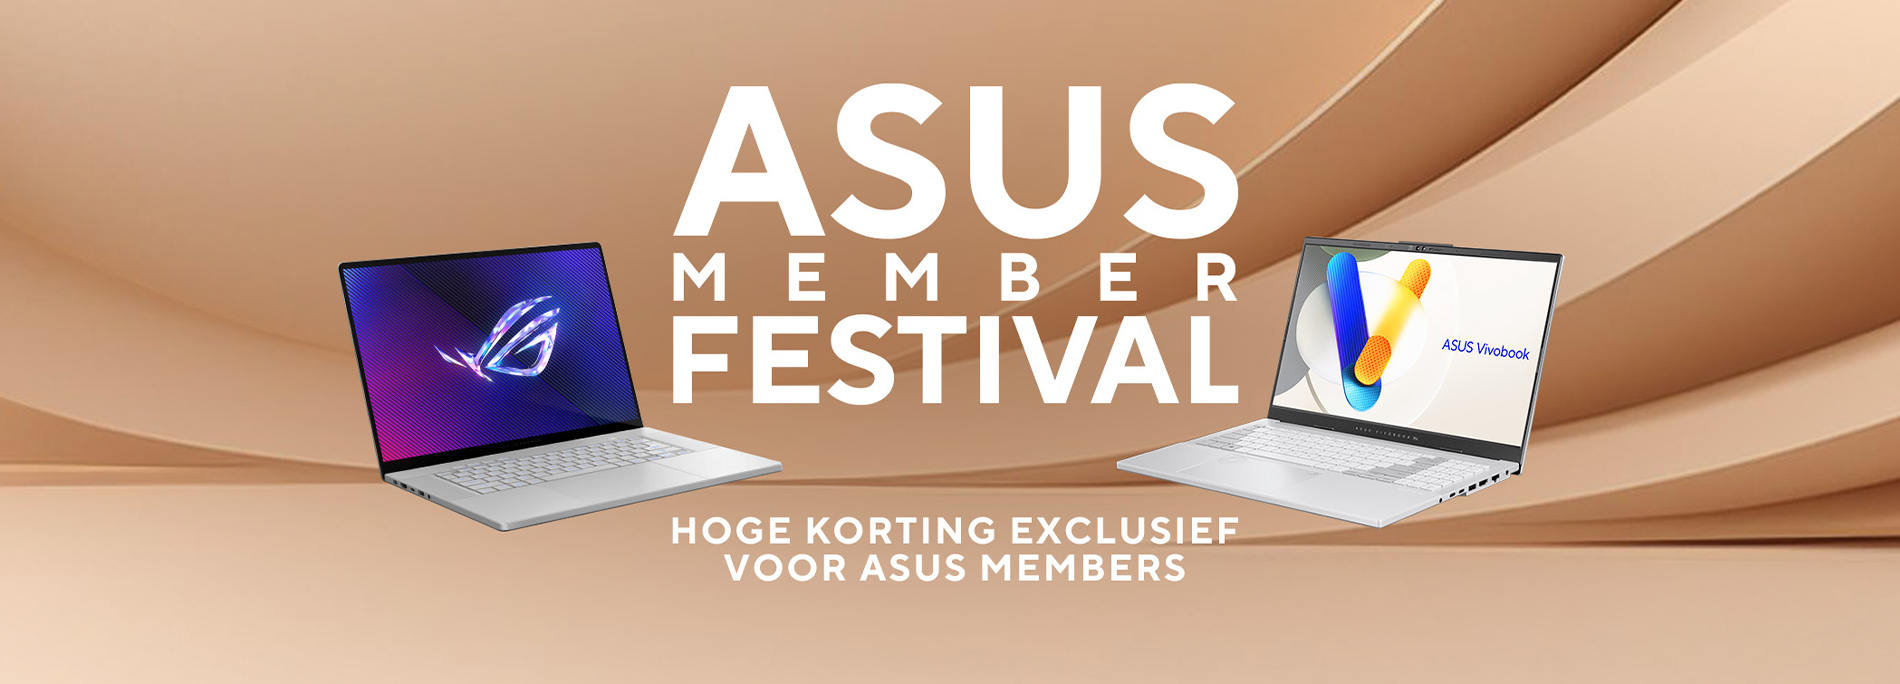 ASUS Member Festival | Hoge korting exclusief voor ASUS Members